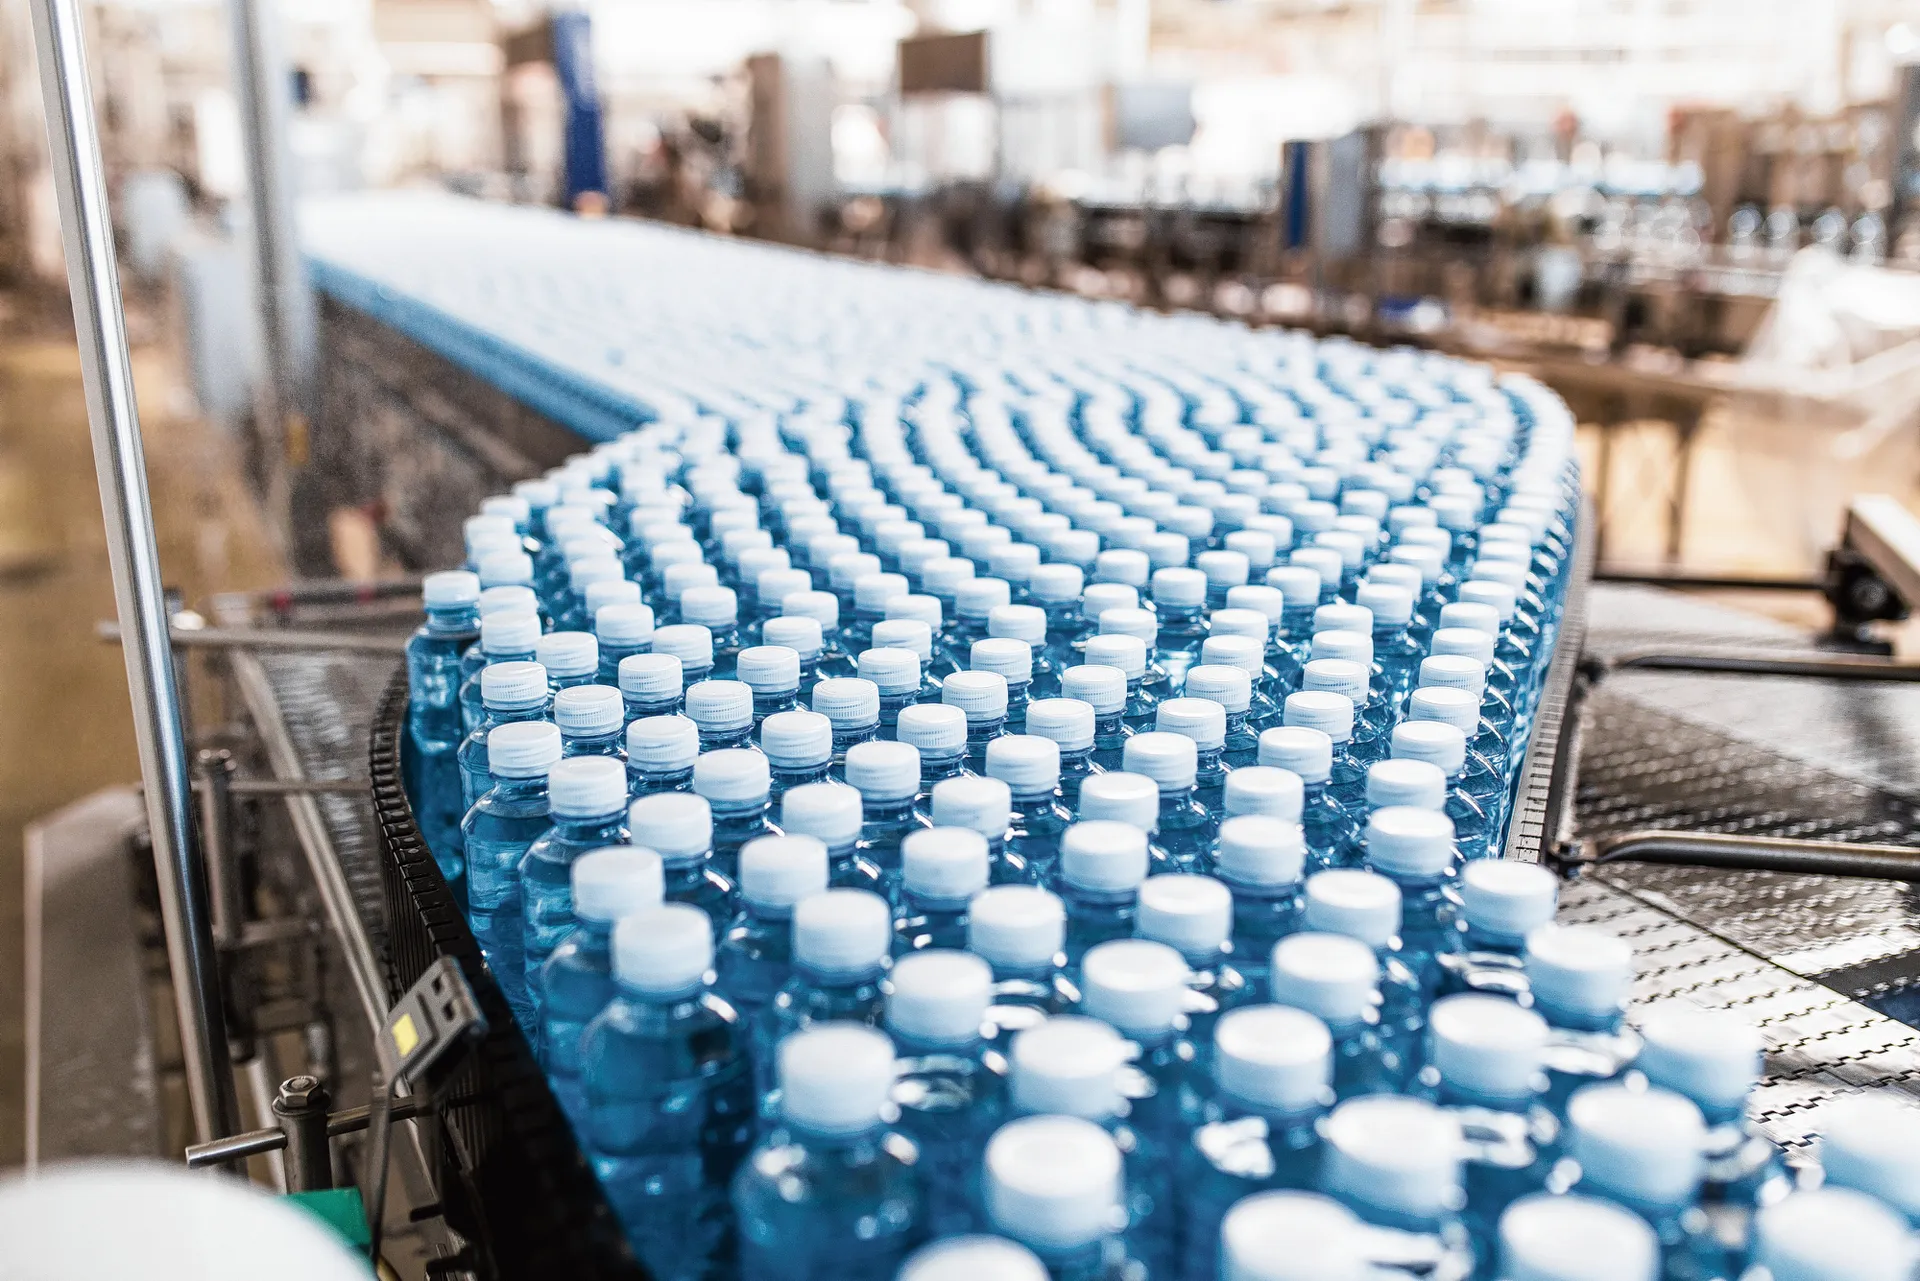 Foto van productielijn van plastic flesjes water